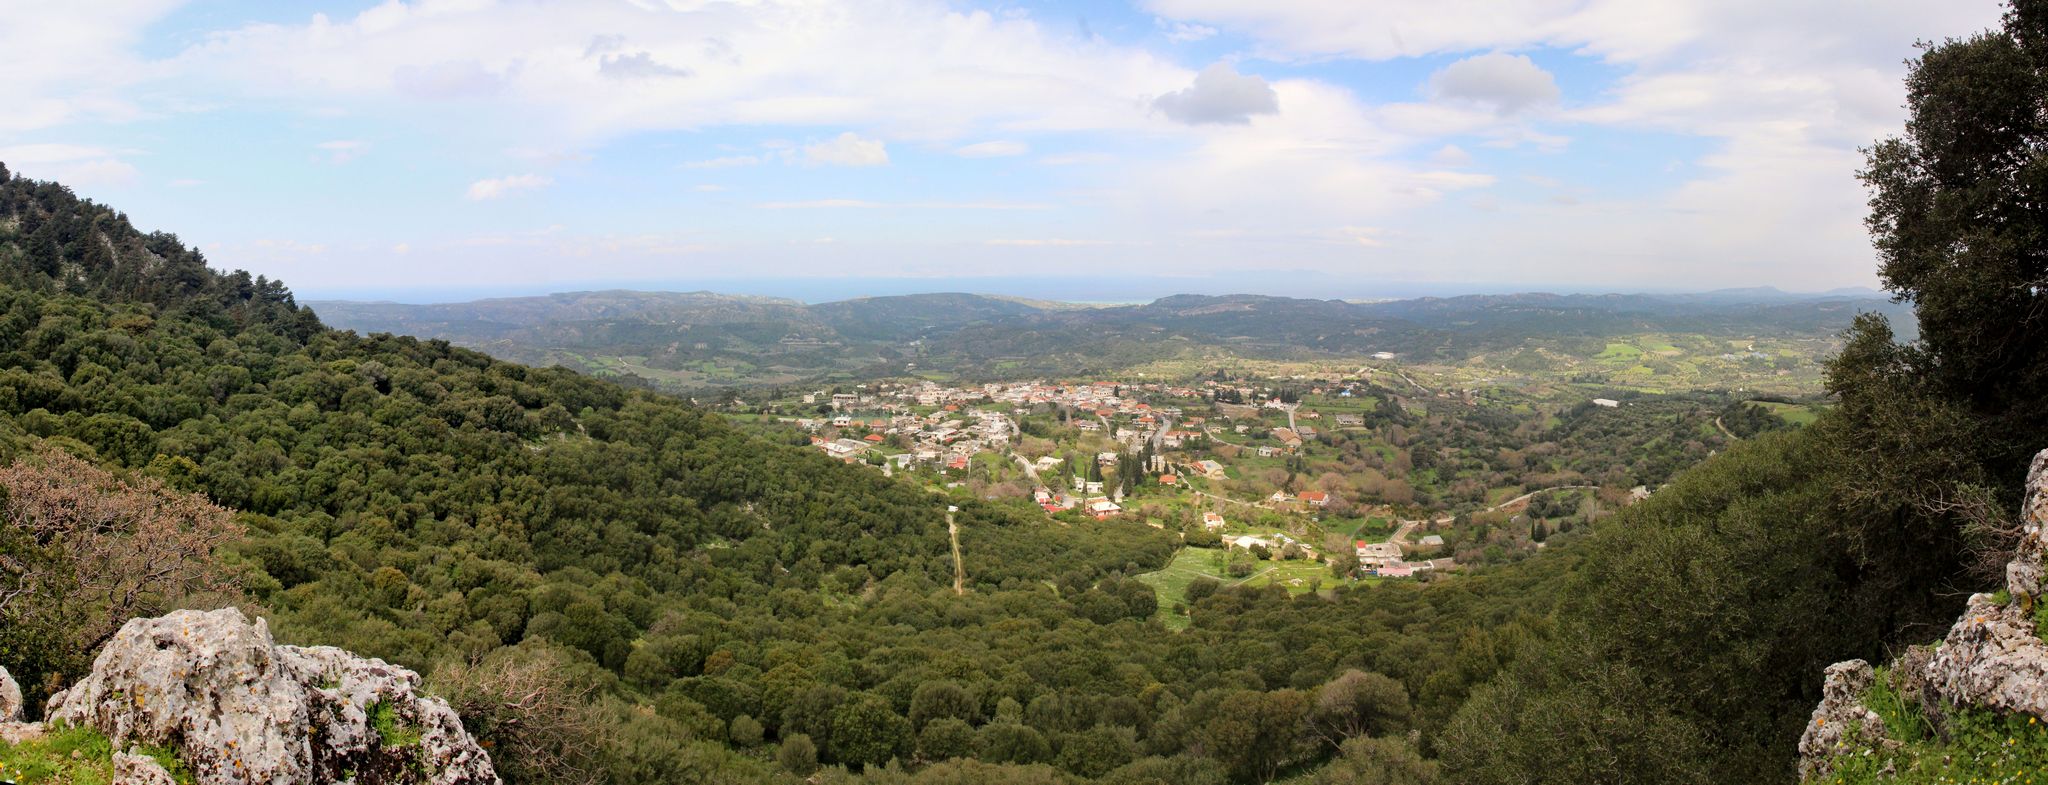 Panorama des grünen Tals auf Rhodos